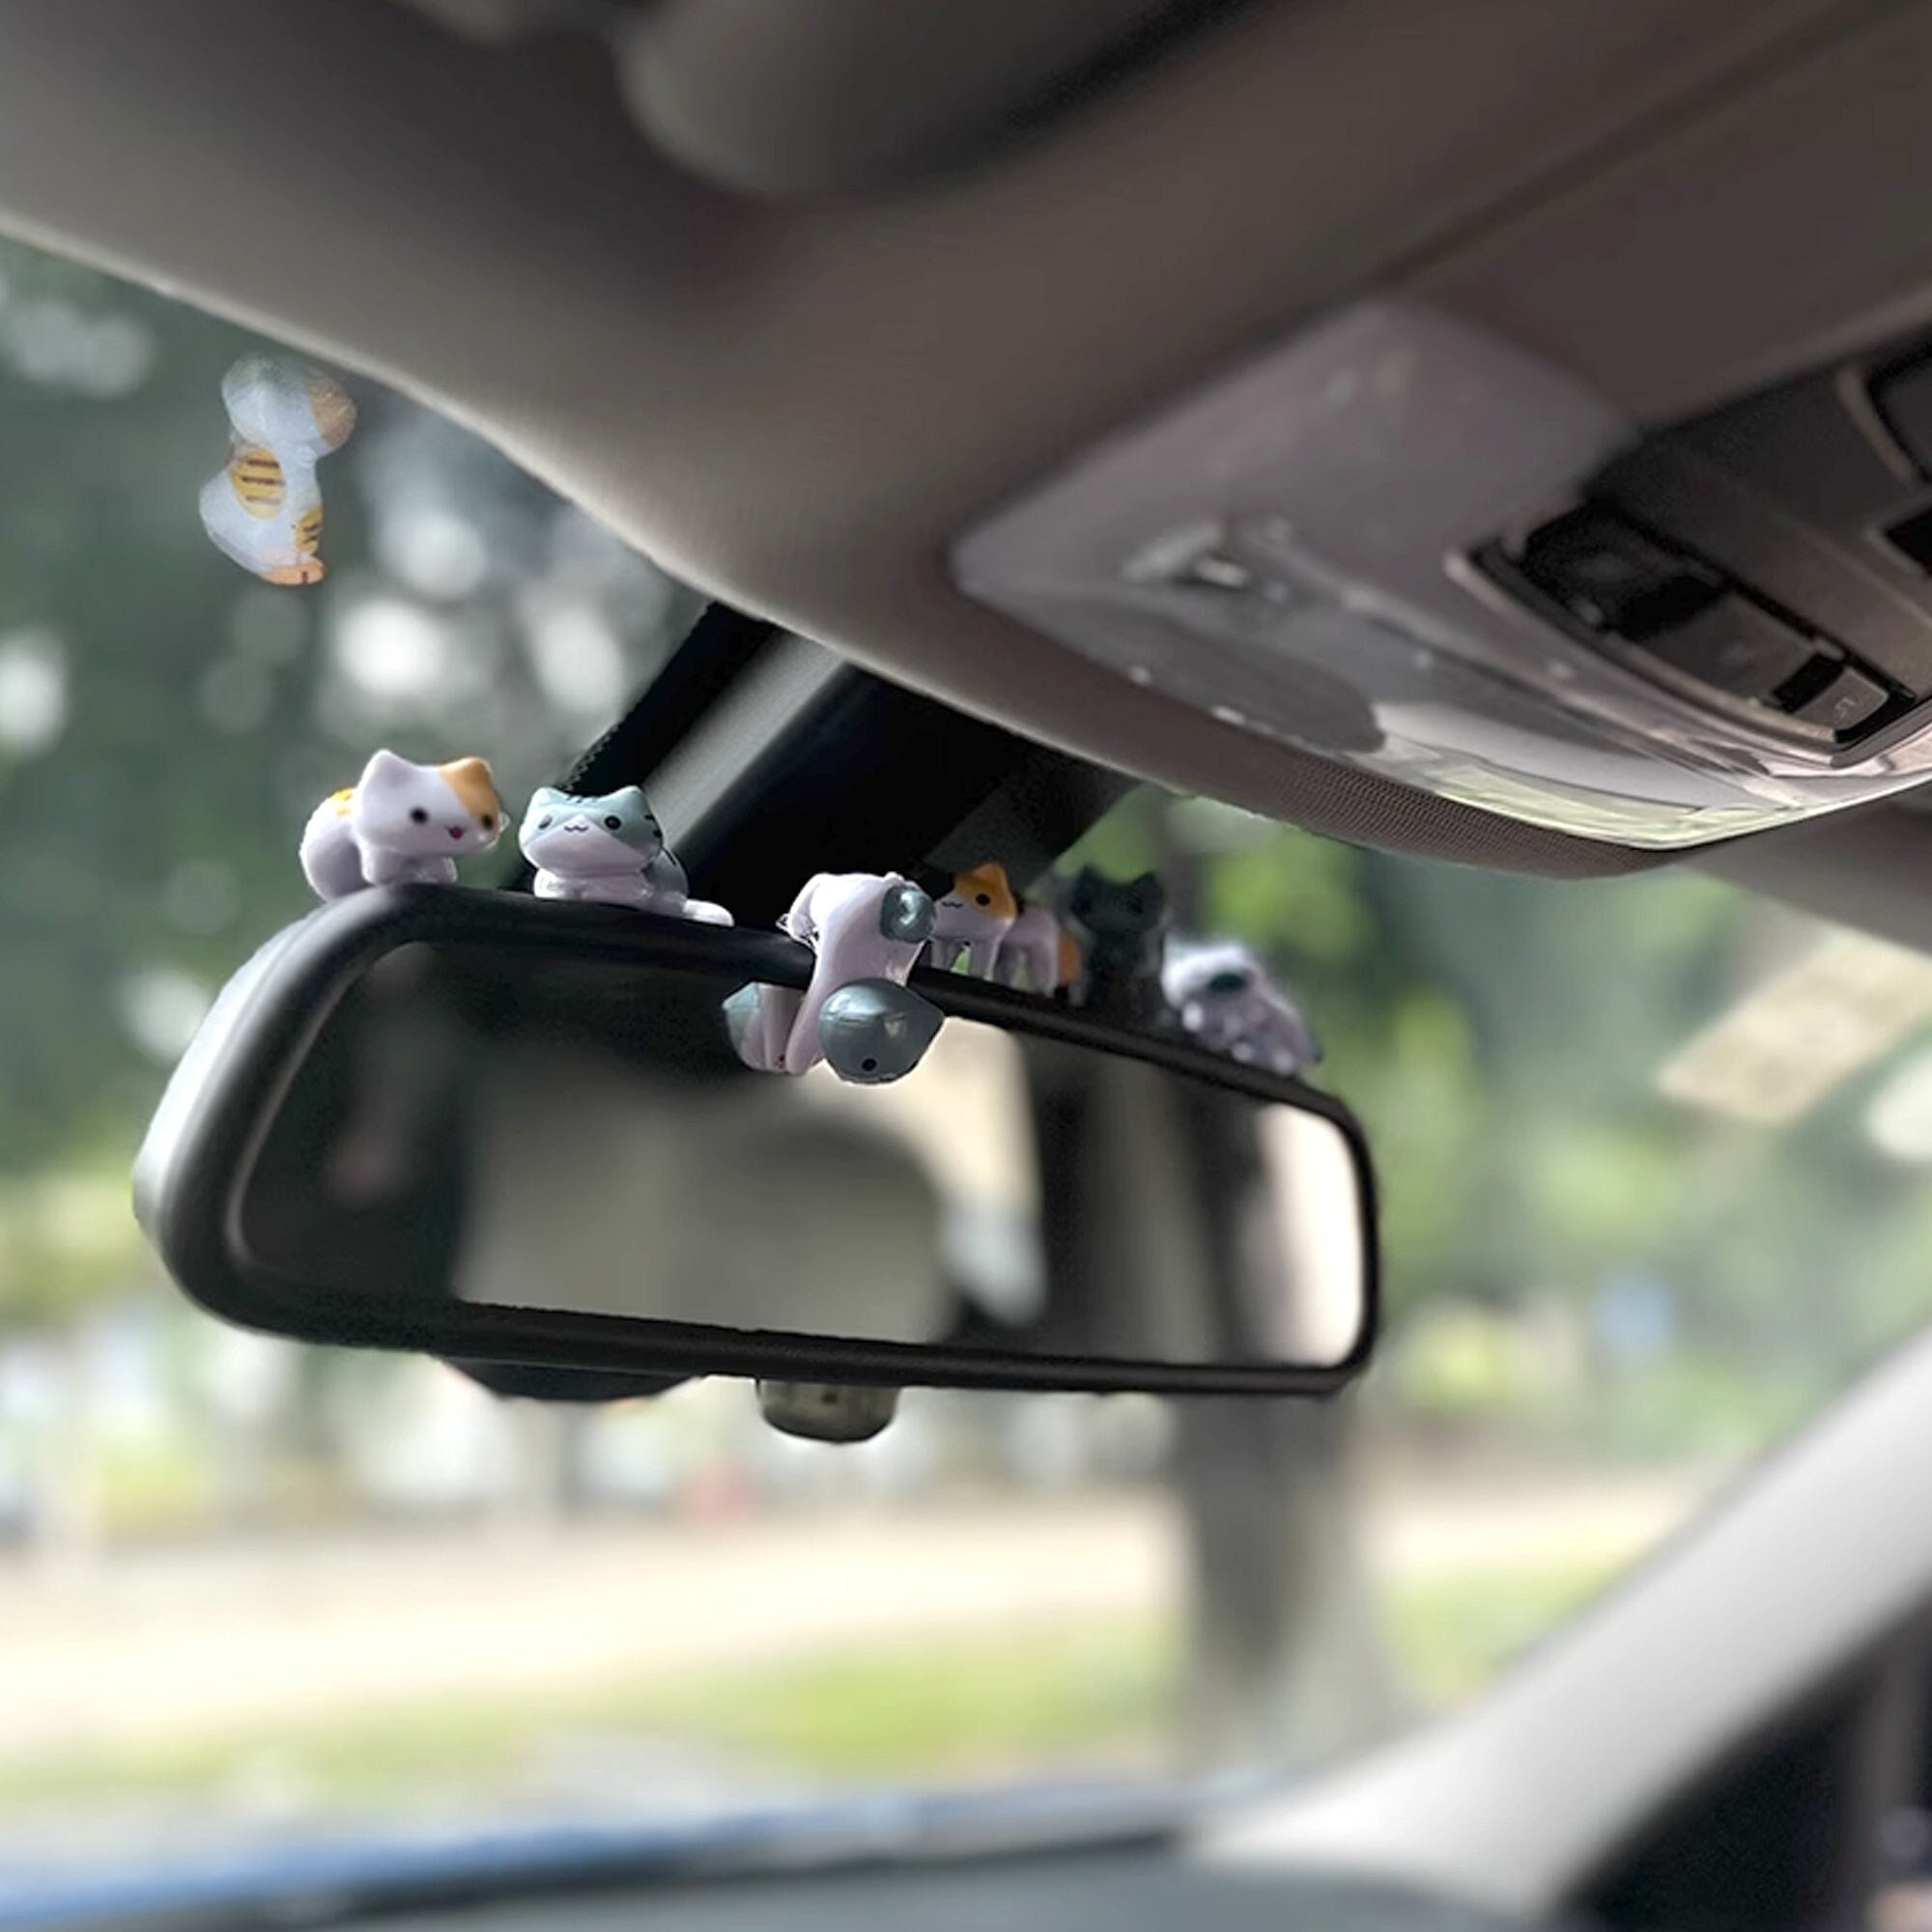  QKHEE Car Mirror Hanging Accessories Cute Car